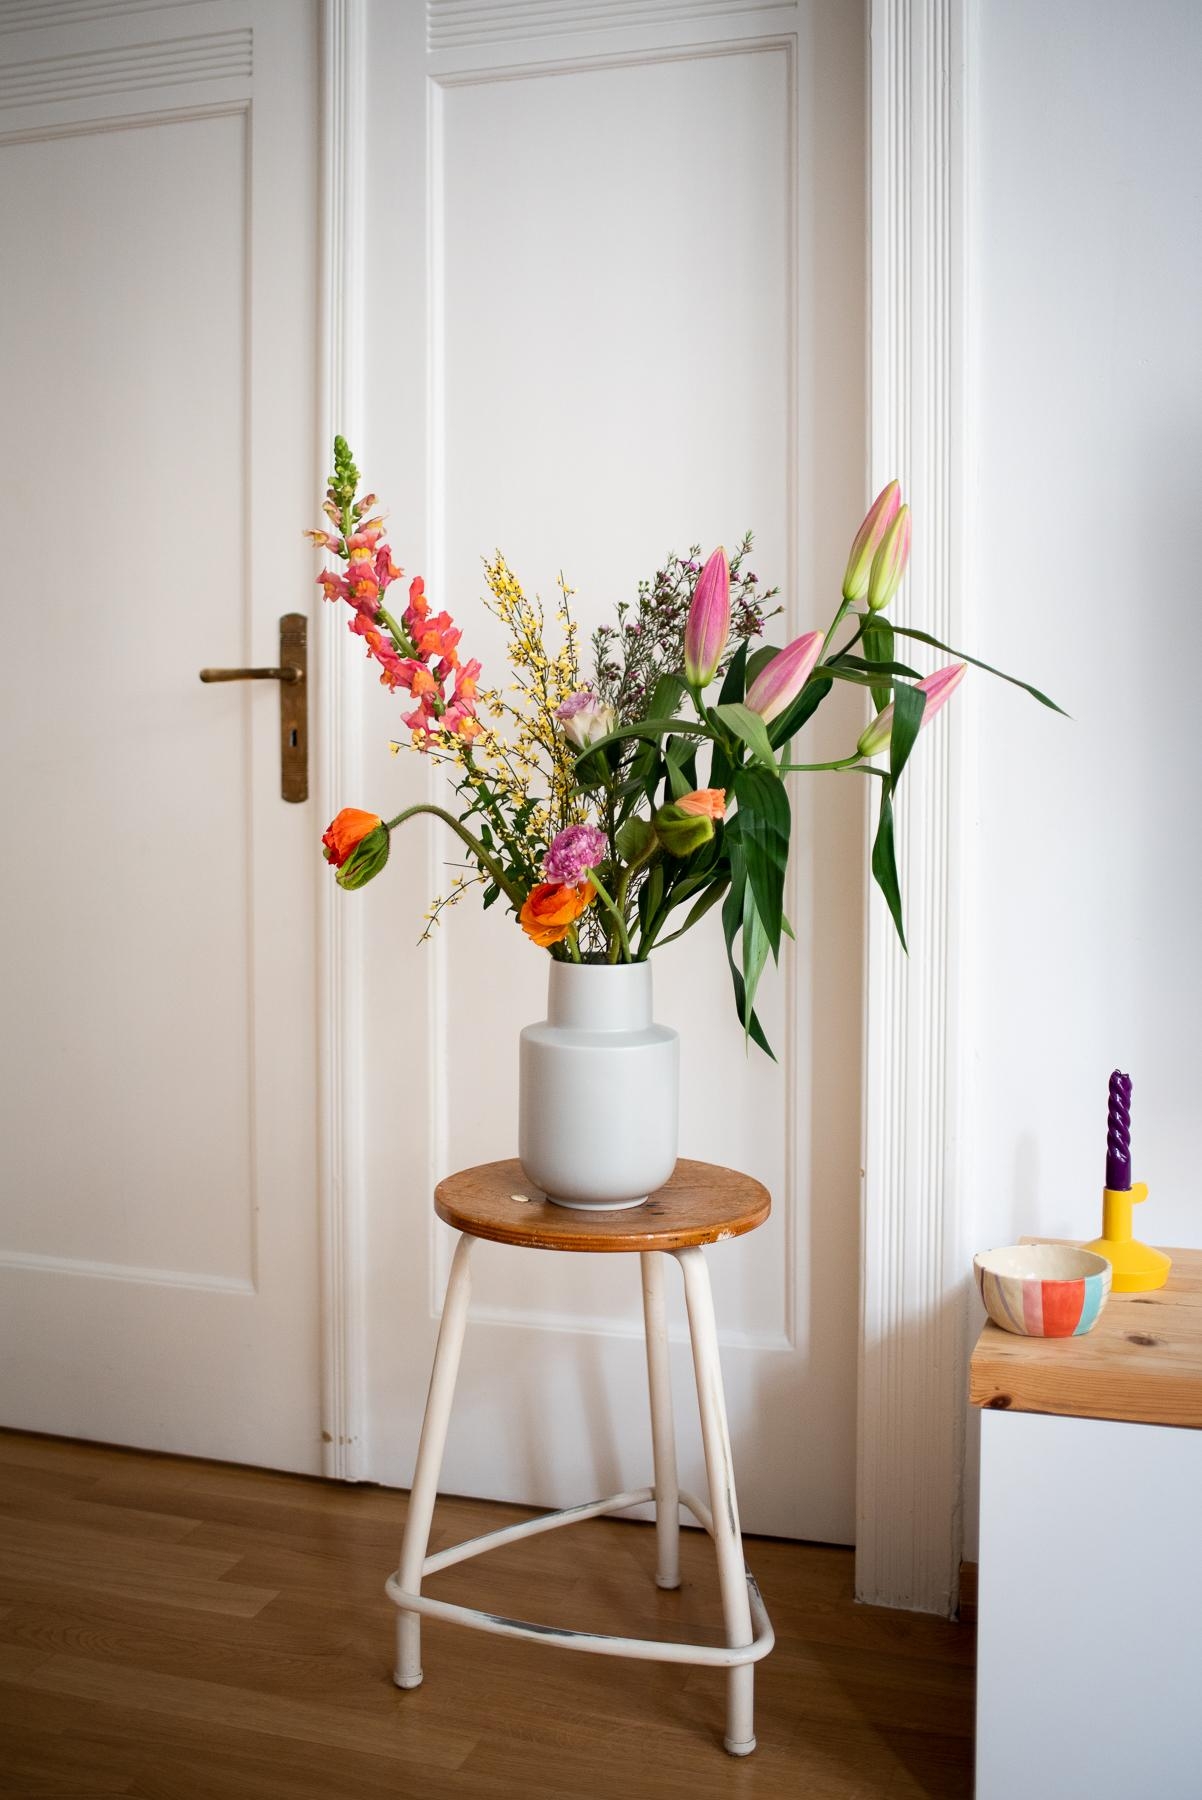 Freitagsblumen! #freshflowerfriday #blumenboquet #vase #vintage #hocker #wohnzimmer #deko #ikea